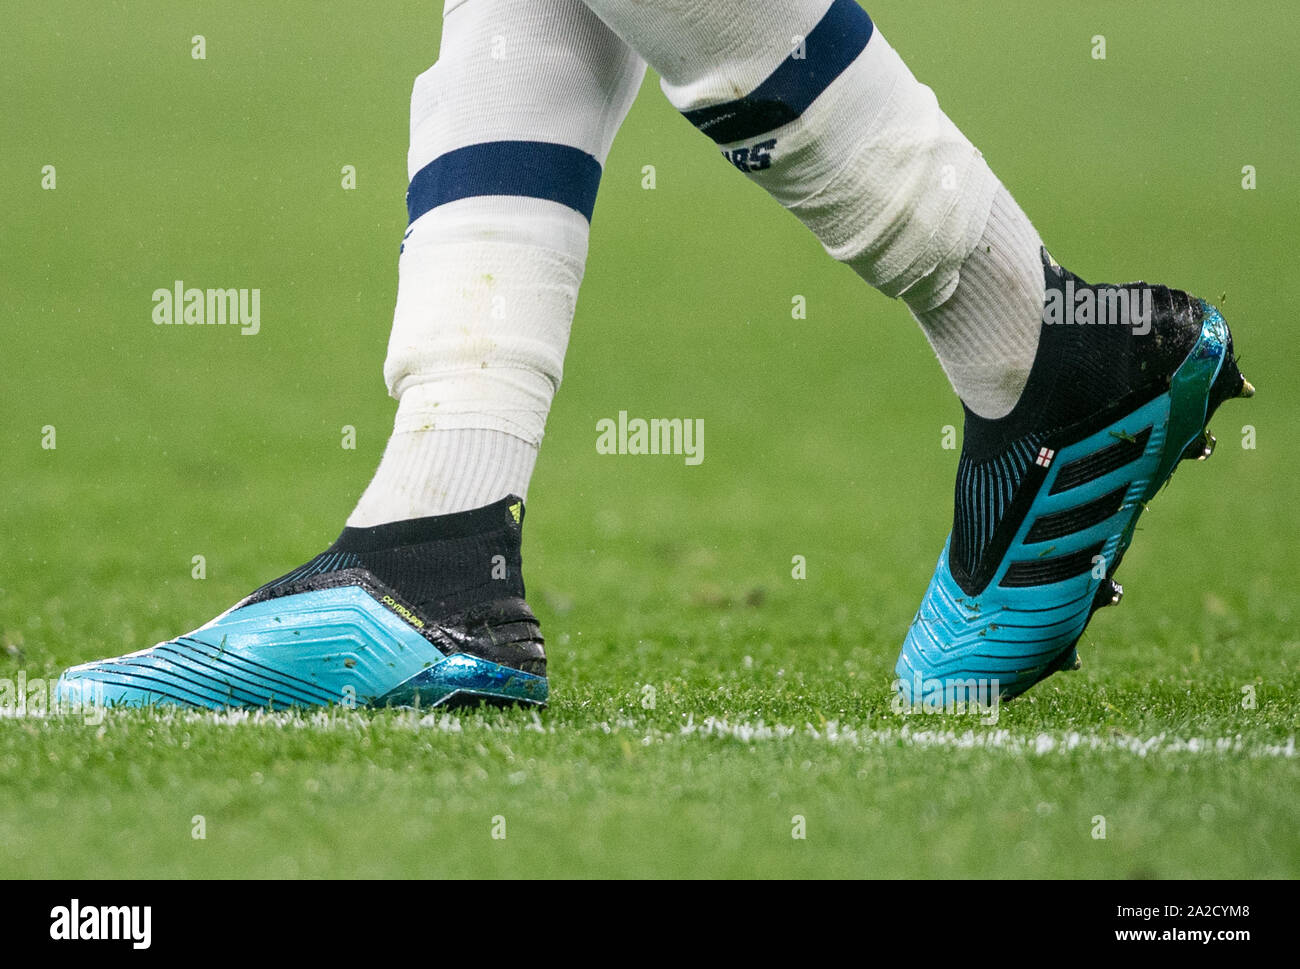 Les chaussures de football Adidas de Alli Dele d'éperons avec drapeau de l' Angleterre au cours de l'UEFA Champions League match de groupe entre  Tottenham Hotspur et Bayern Munich au stade de Wembley,